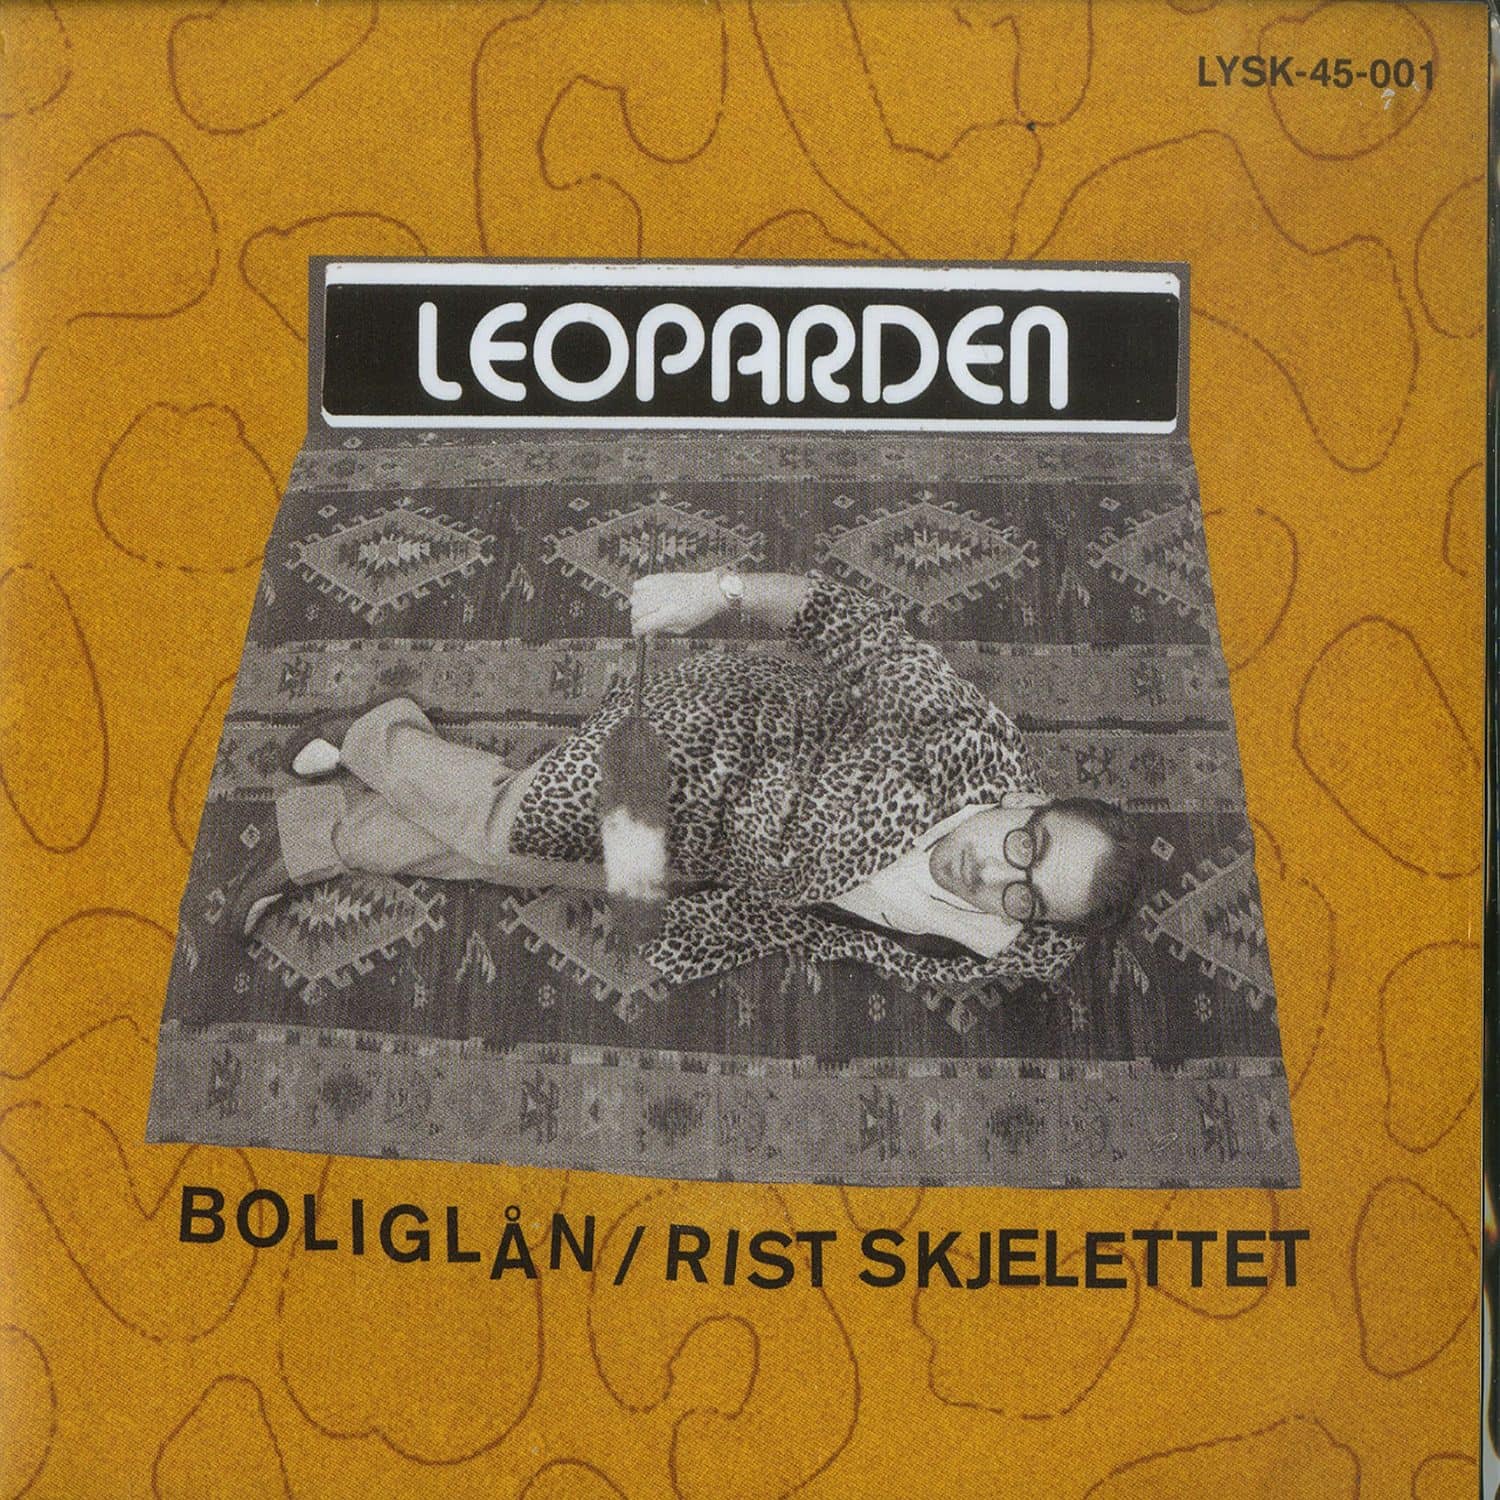 Leoparden - BOLIGLAN / RIST SKJELETTET 